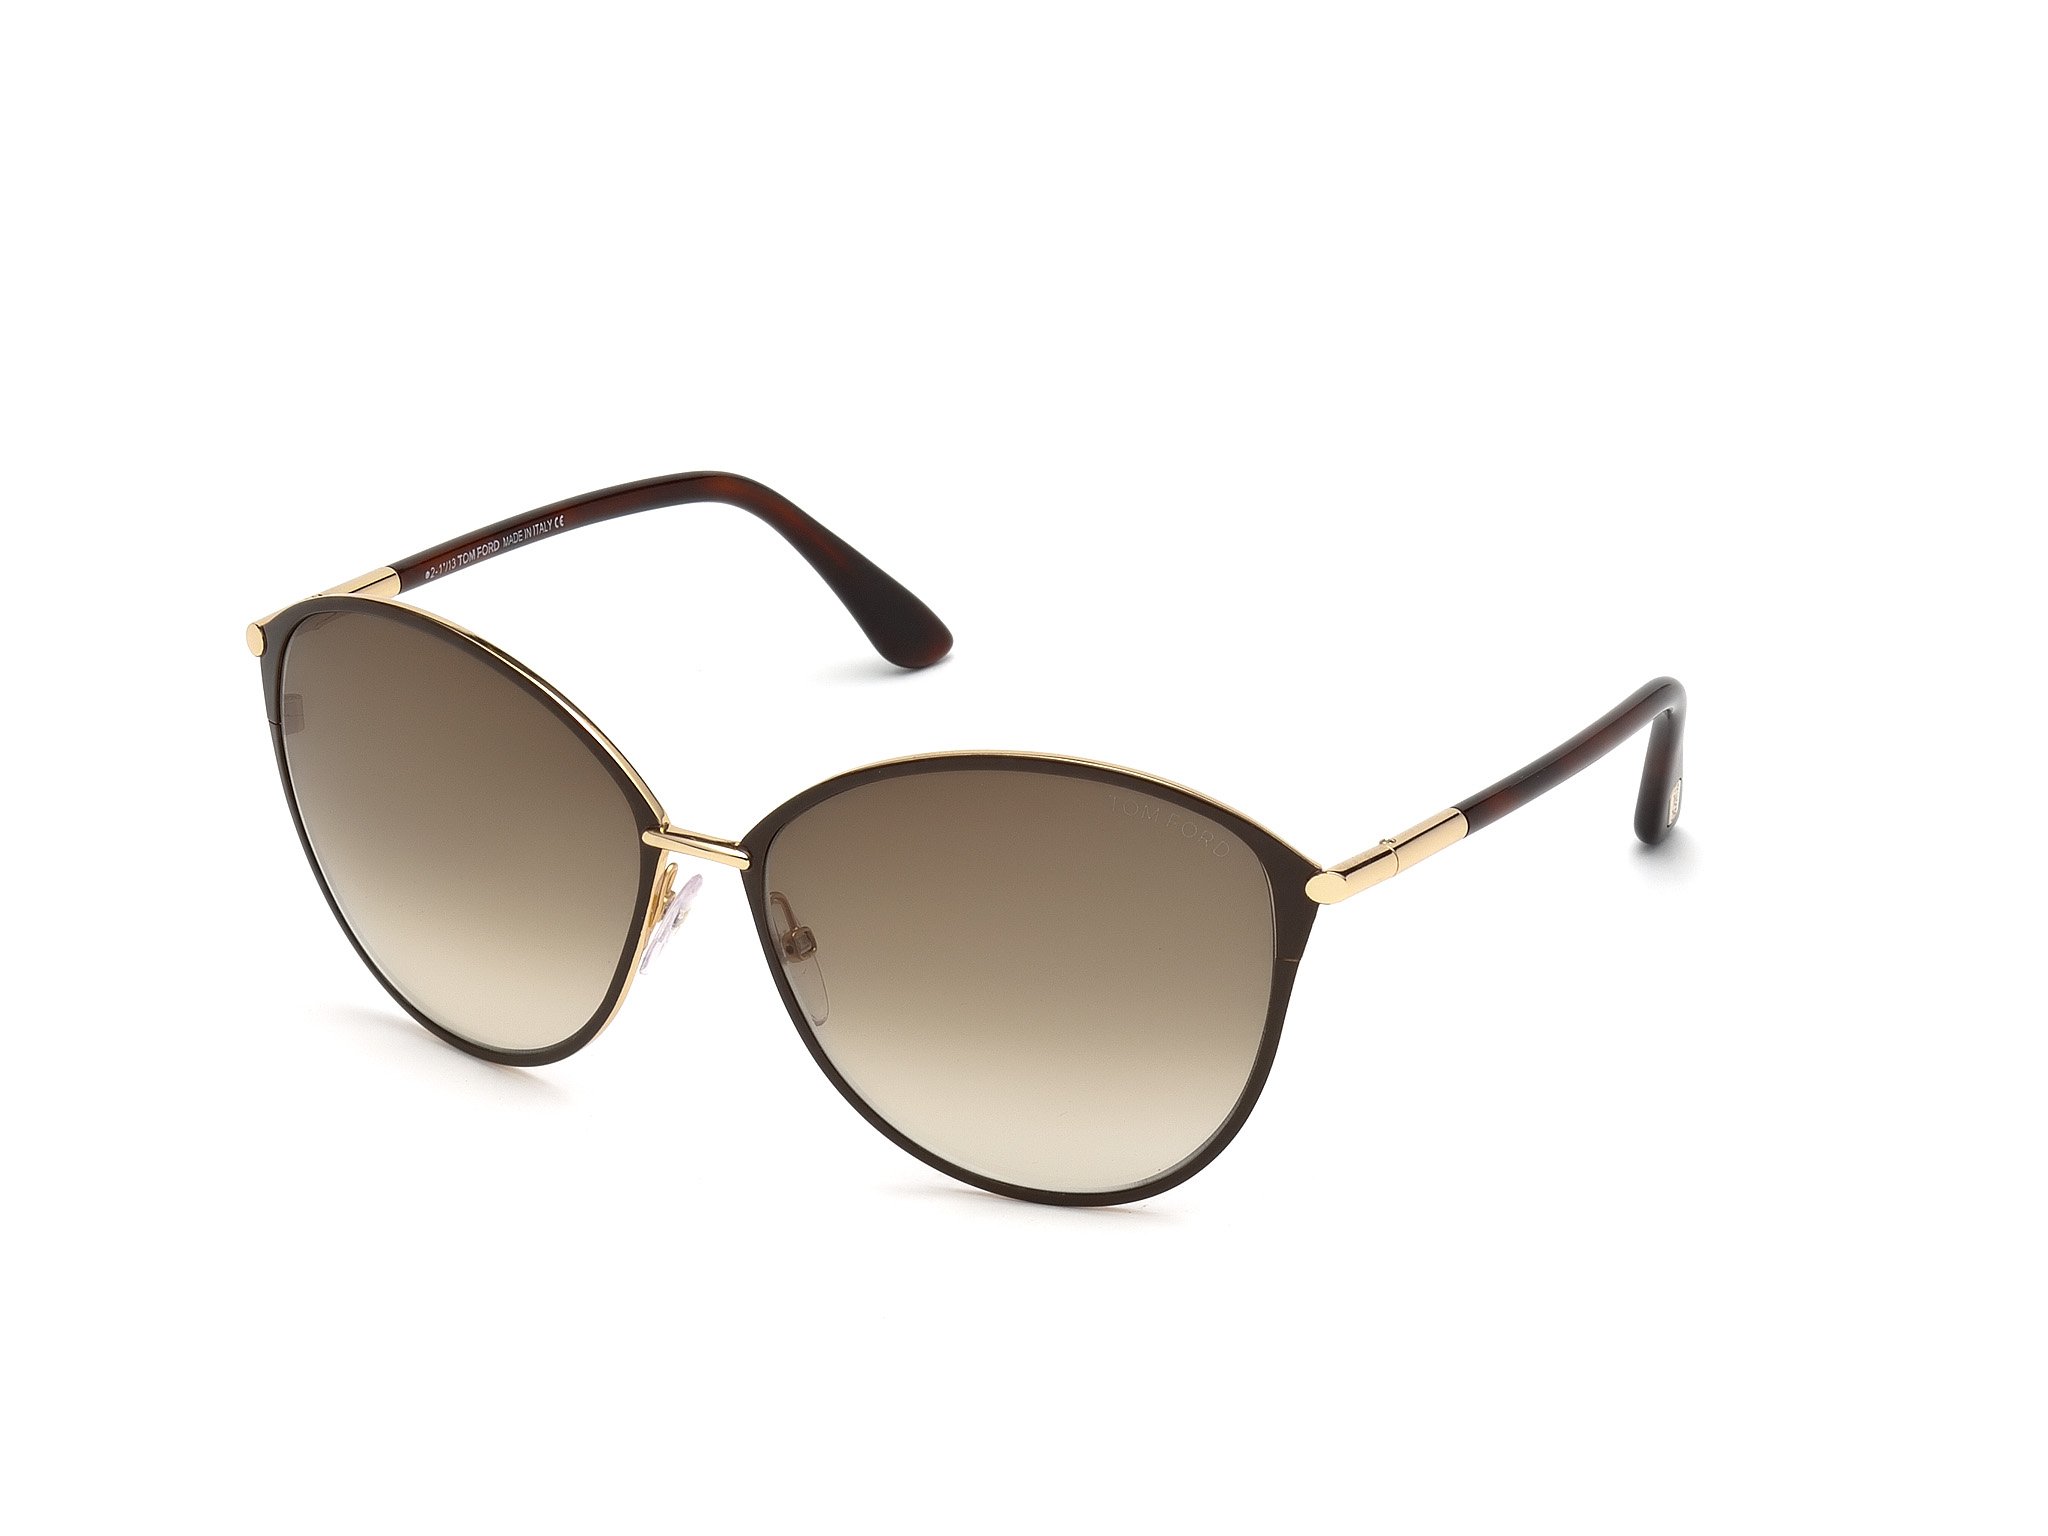 Das Bild zeigt die Sonnenbrille Penelope FT0320 von der Marke Tom Ford in schwarz gold